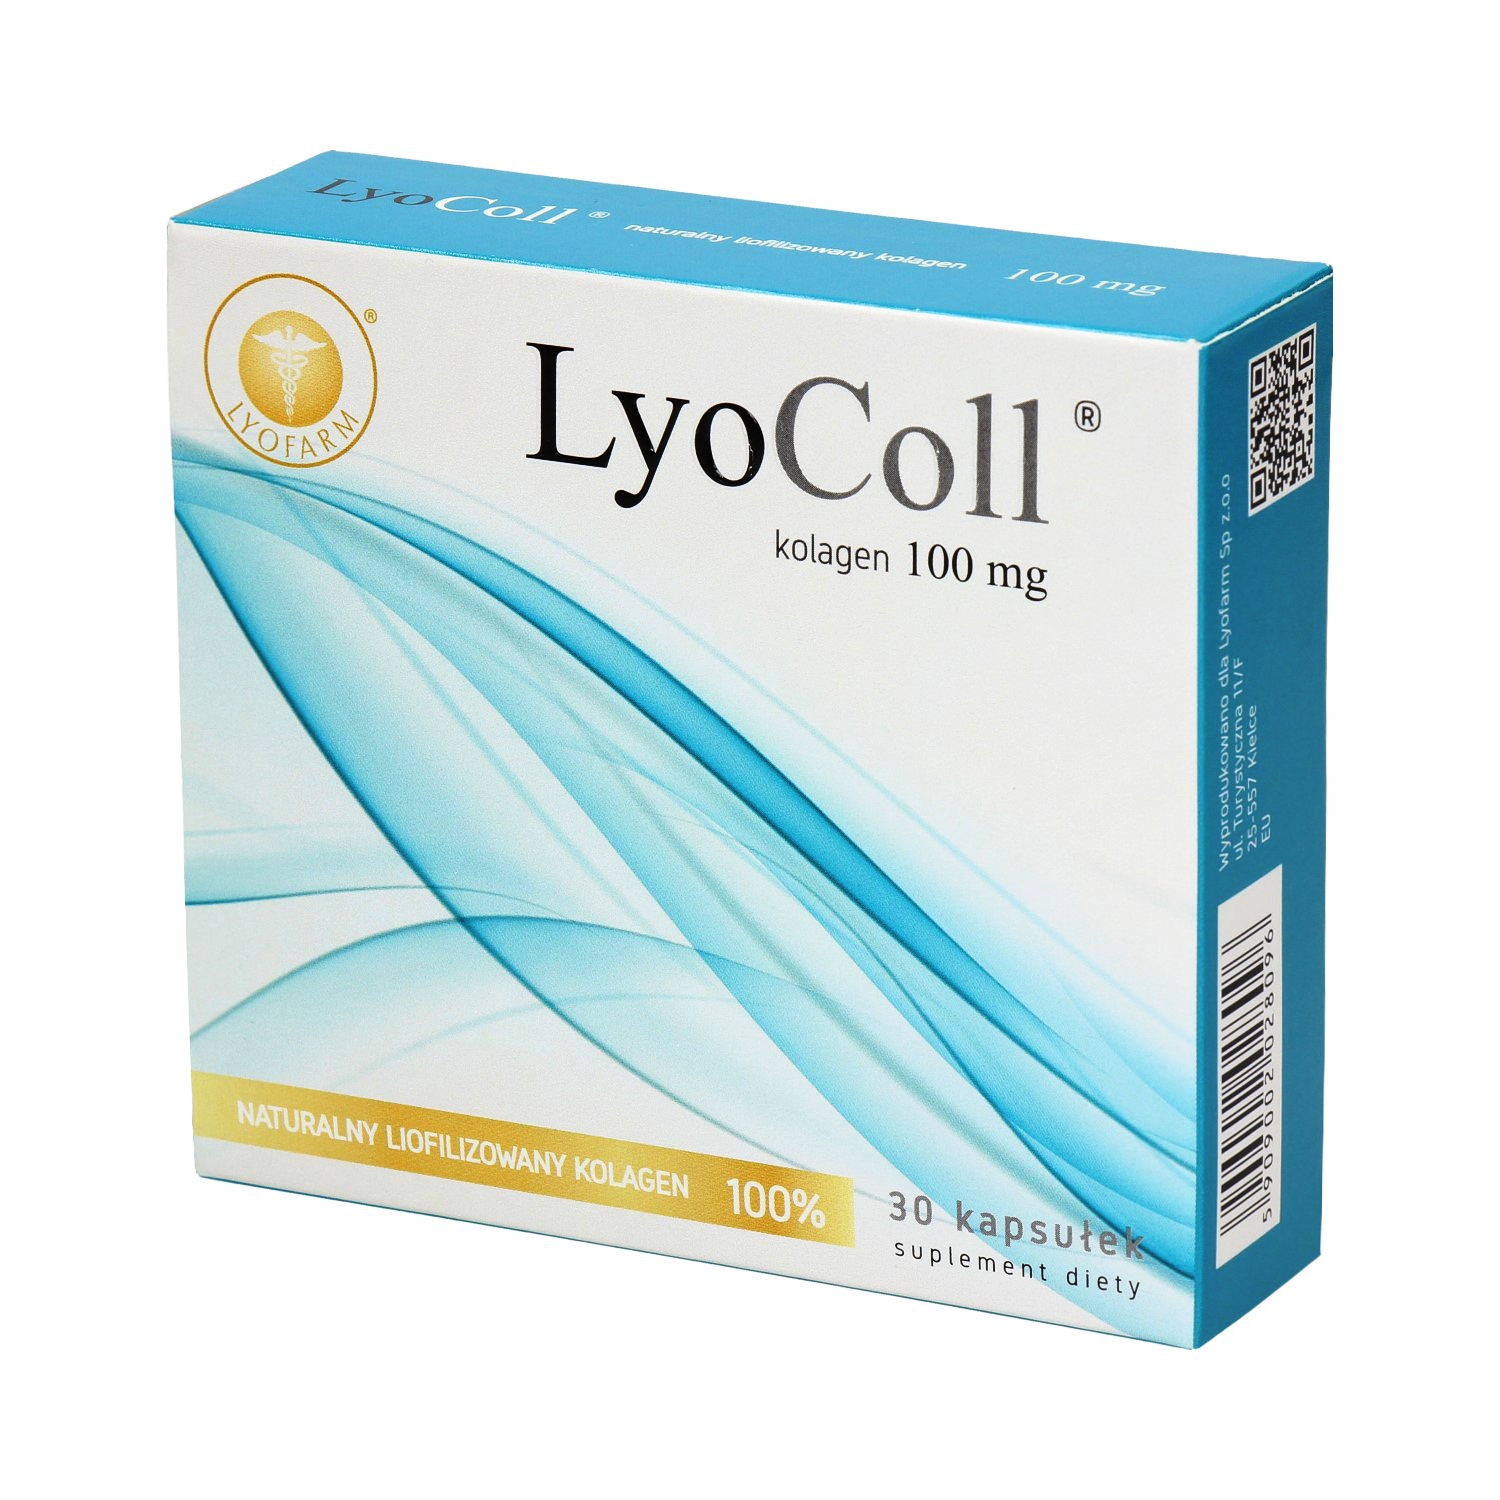 Kolagen LyoColl ®